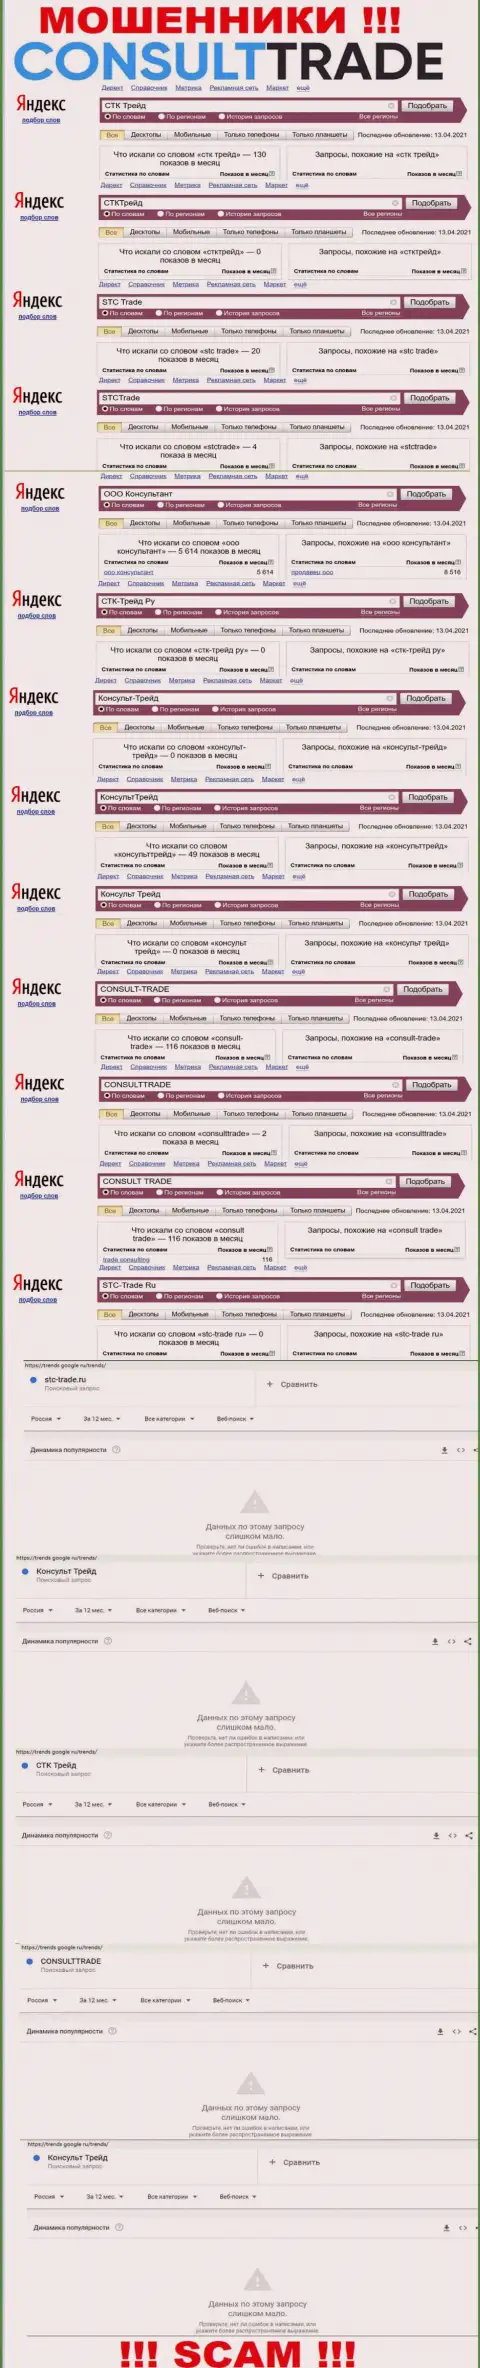 Скриншот статистики онлайн запросов по противоправно действующей организации CONSULT TRADE